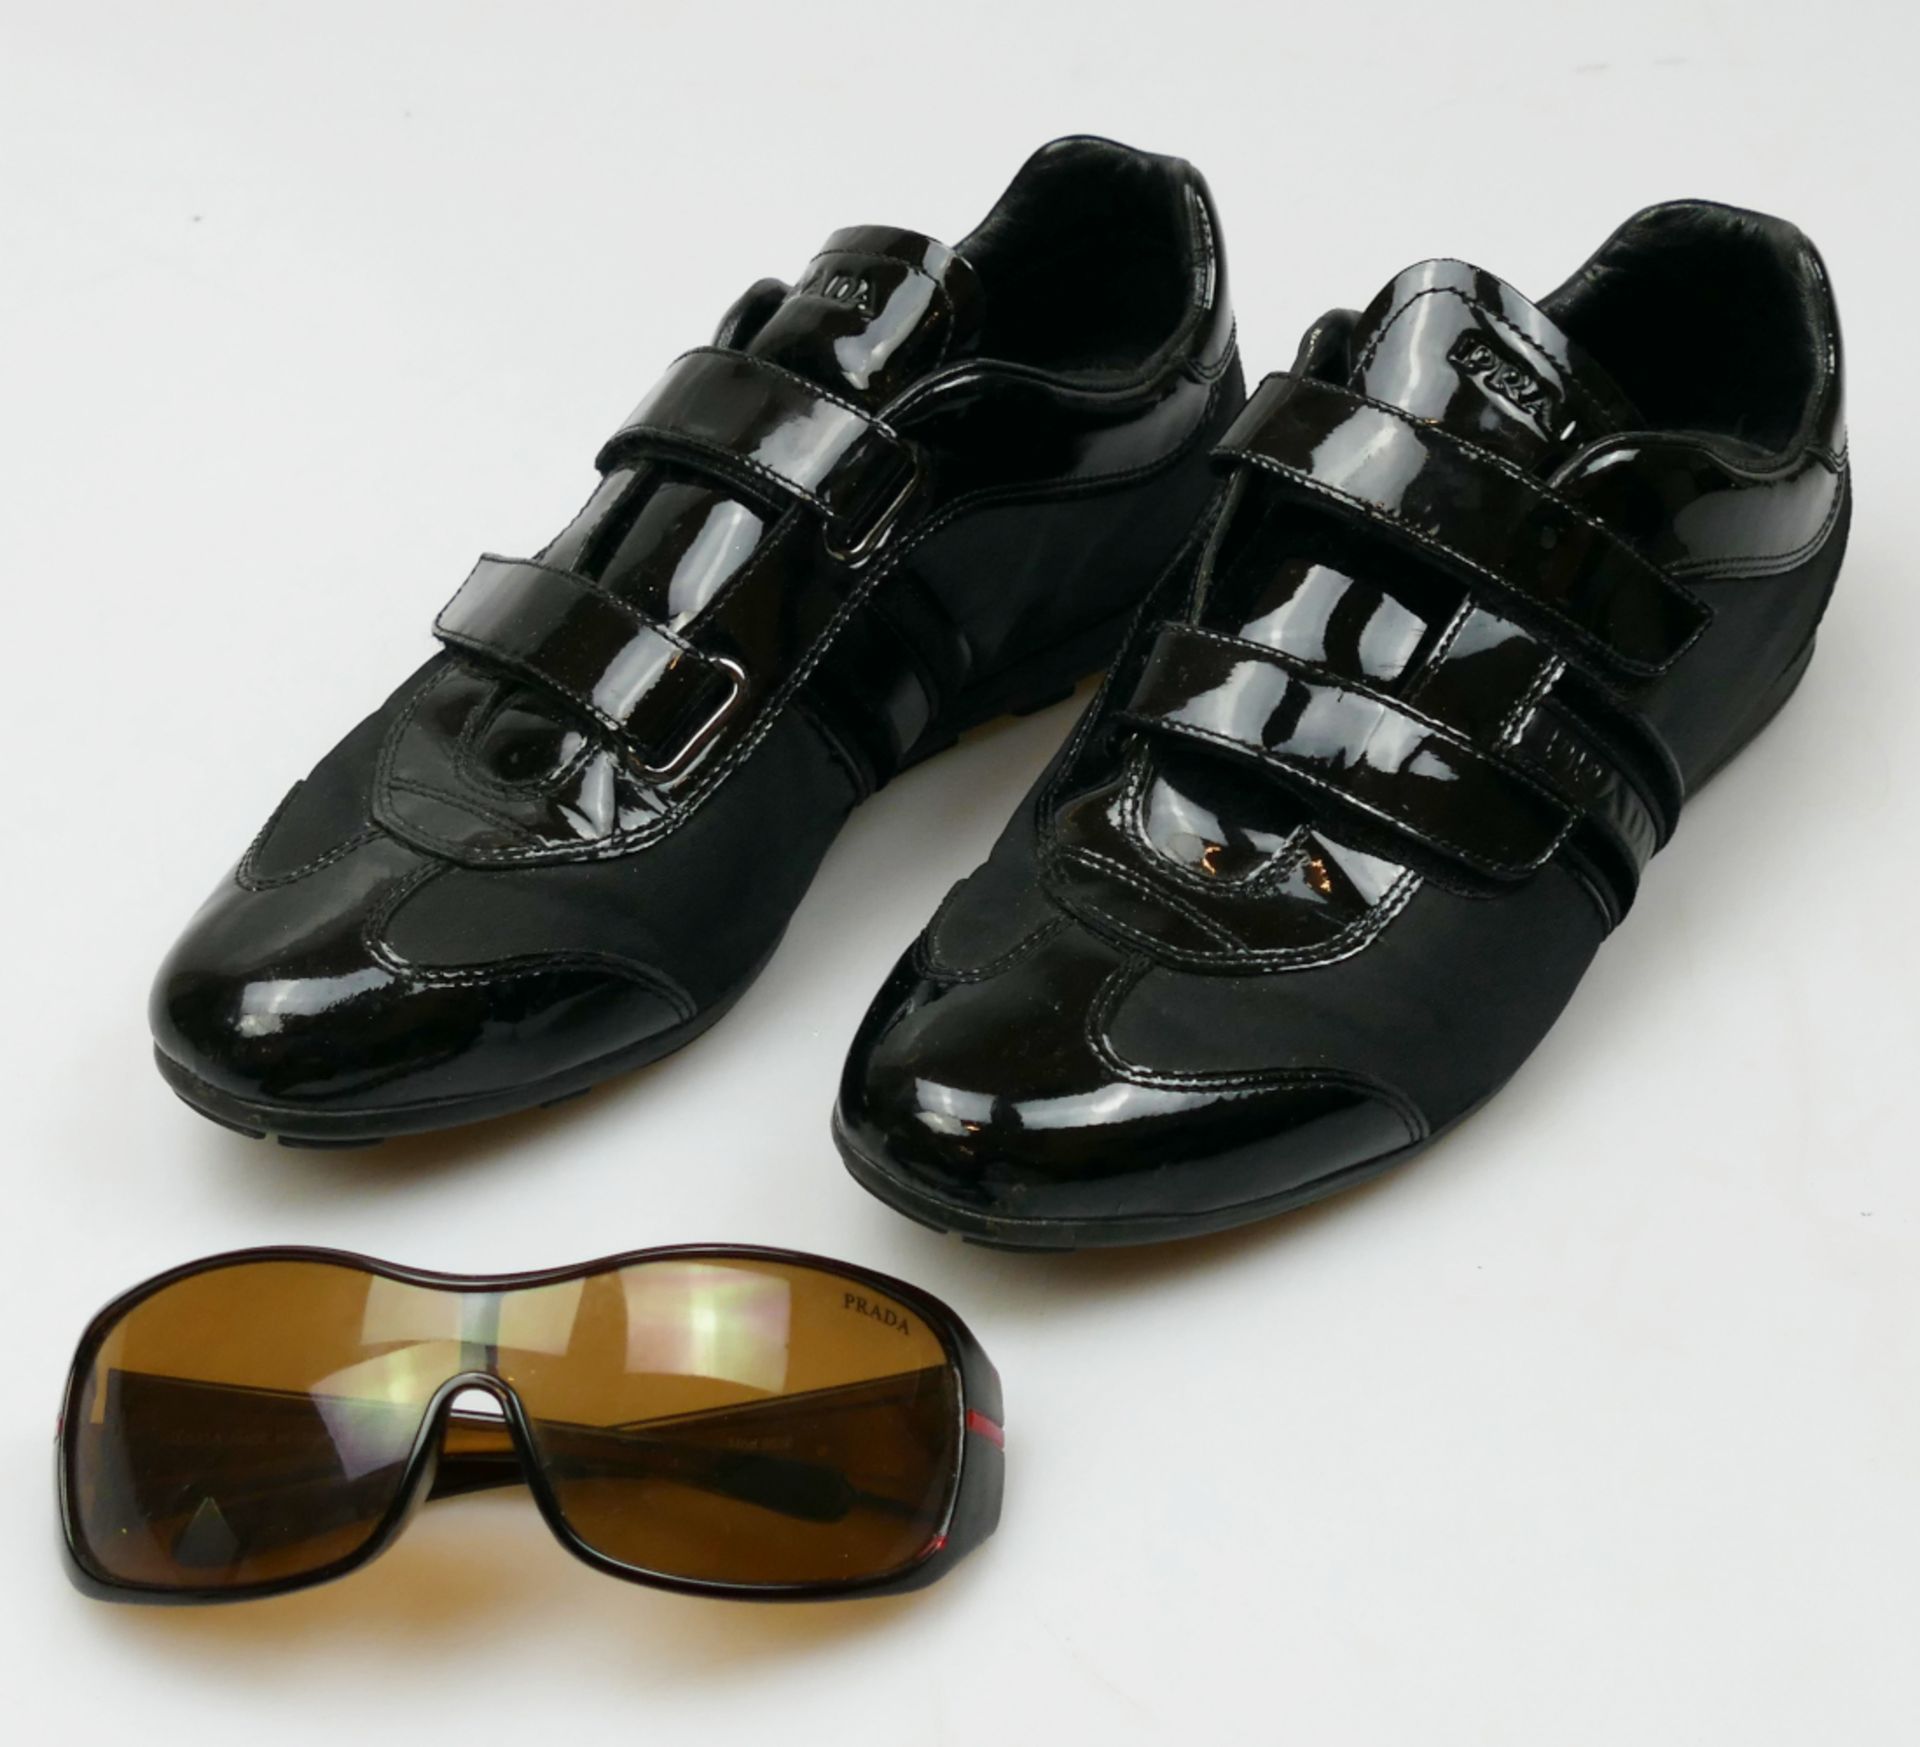 1 Sonnenbrille, 1 Paar Schuhe mit Klettverschluss, Gr. 40,5, je PRADA, je schwarz, z.T. mit Lack, je